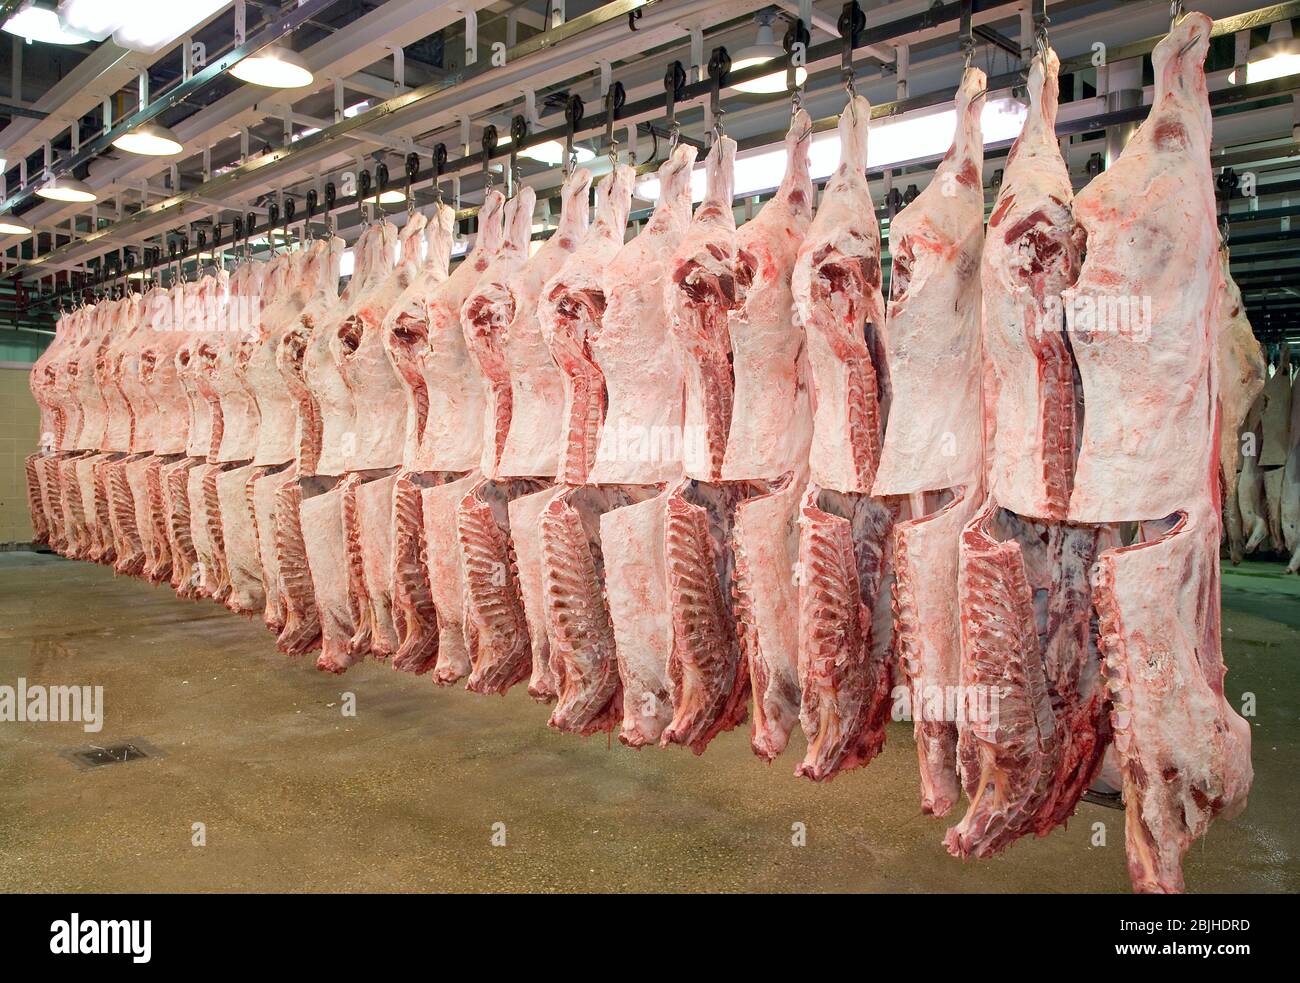 Frisch geschlachtete Schlachtkörper hängen in einem Kühlraum der Fleischverarbeitungsanlage. Das Lendenauge wird ausgesetzt, um die Qualität zu bestimmen. Stockfoto